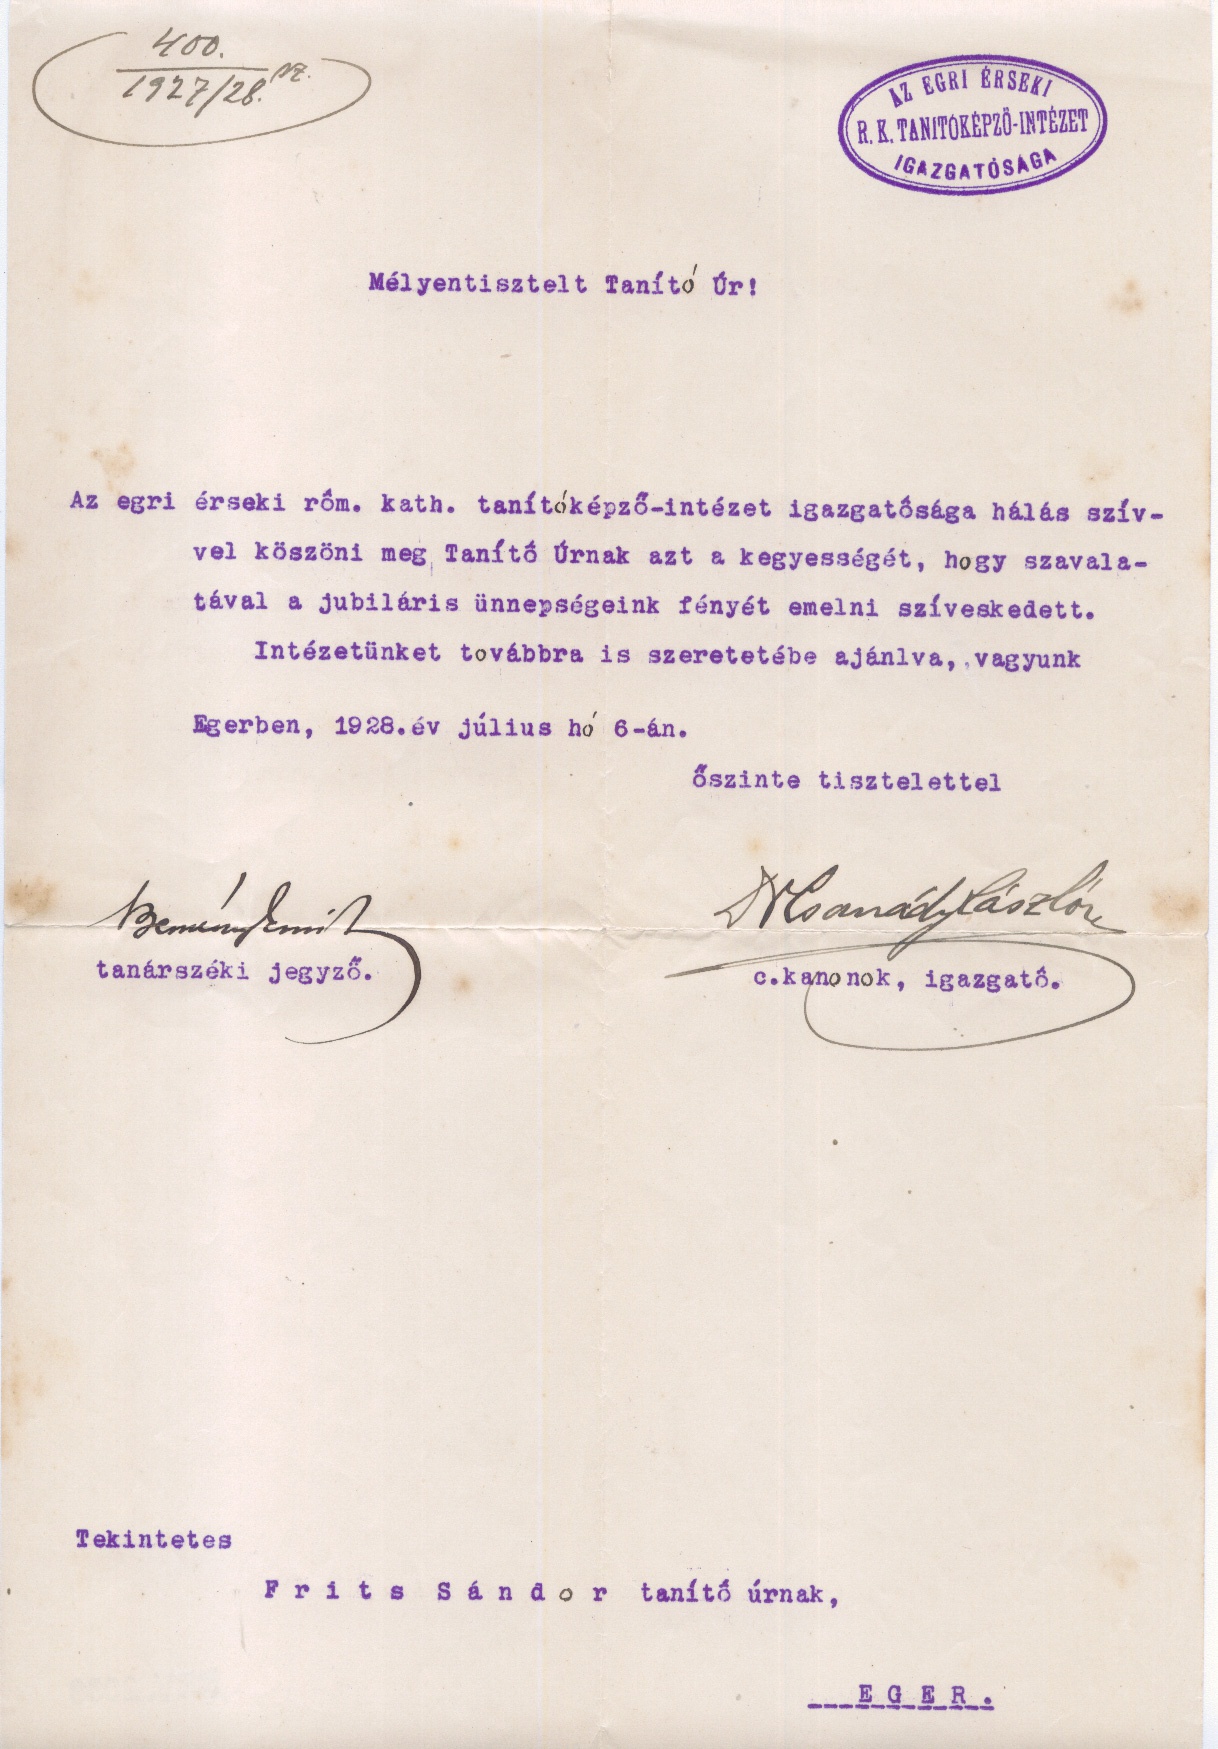 Köszönô levél (Gömöri Múzeum, Putnok CC BY-NC-SA)